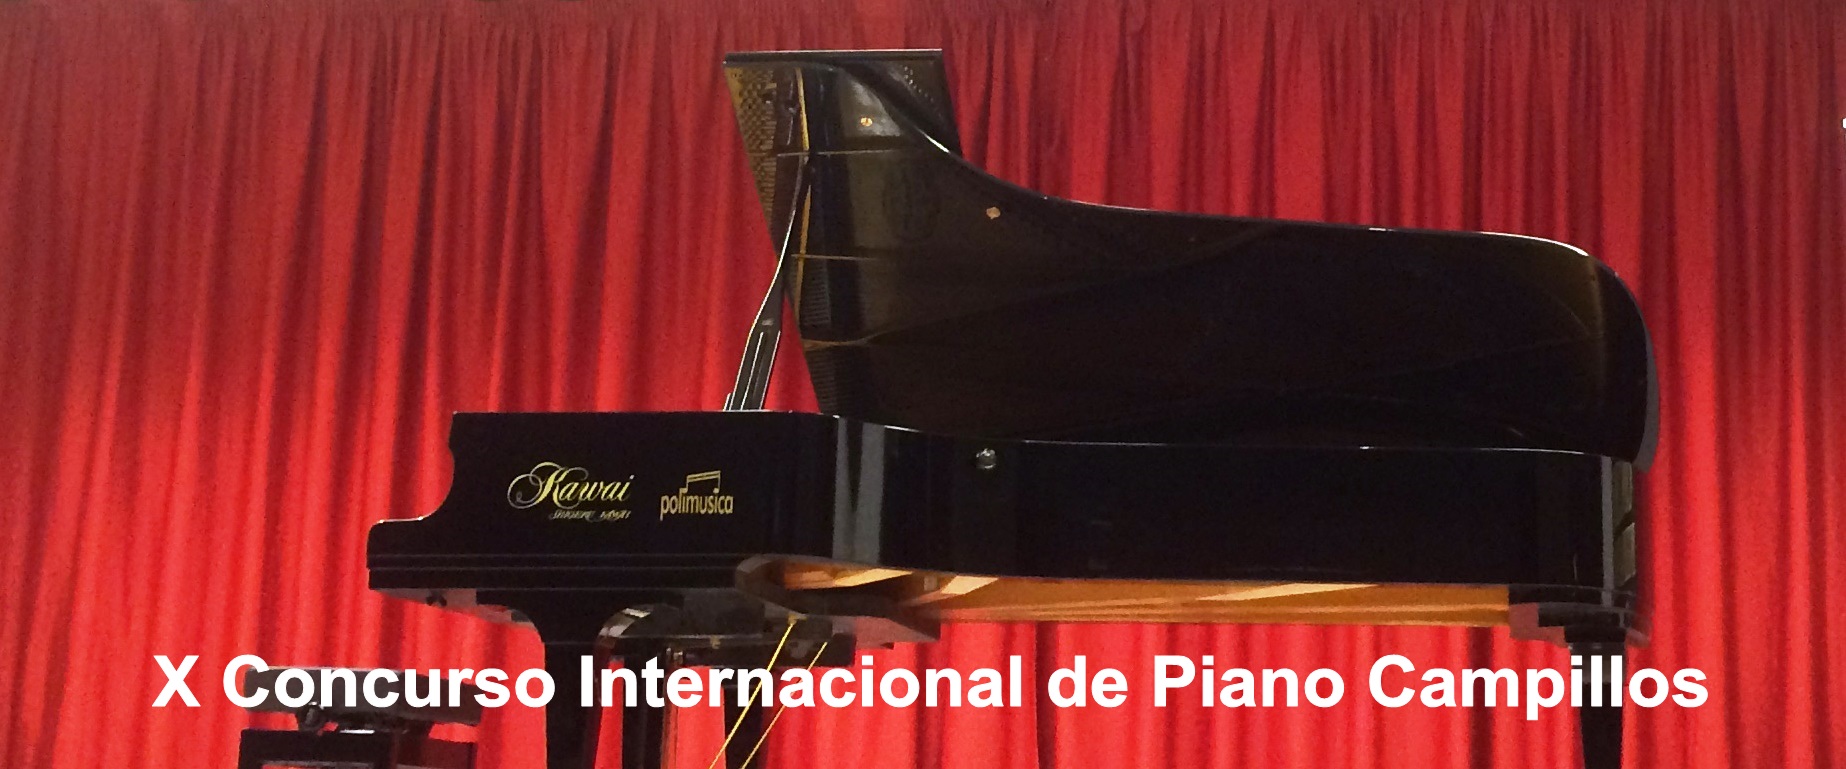 concurso internacional piano